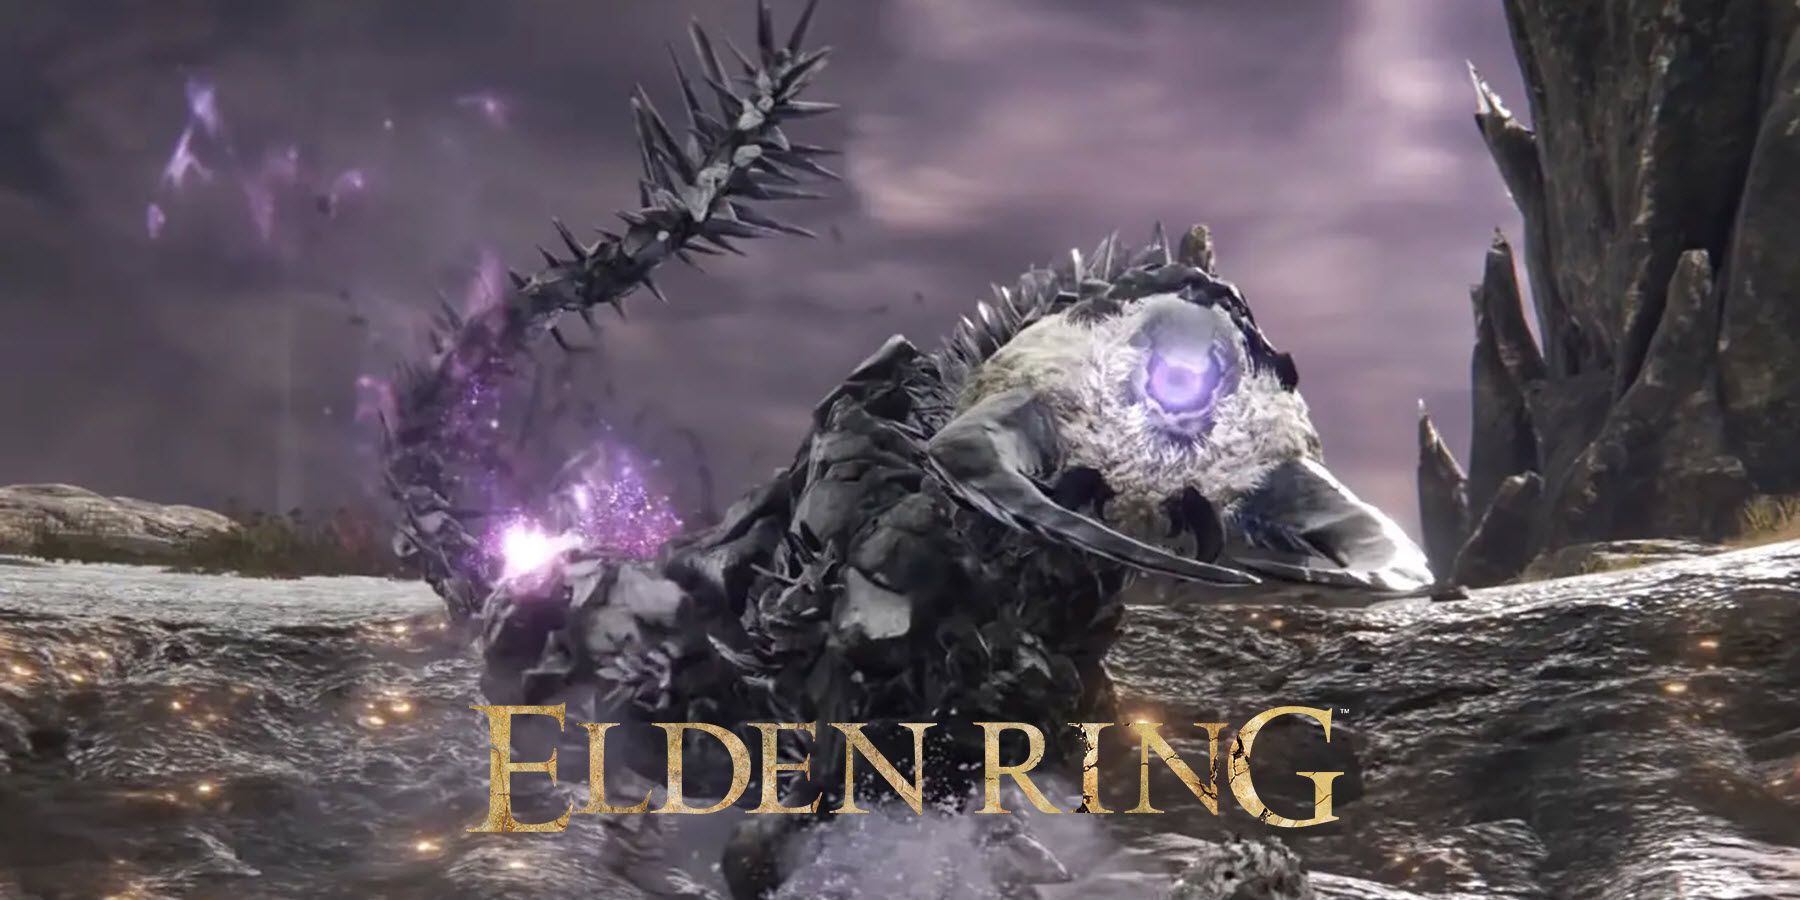 Elden Ring Fallingstar Beast Boss Fight Ends in Heartbreak